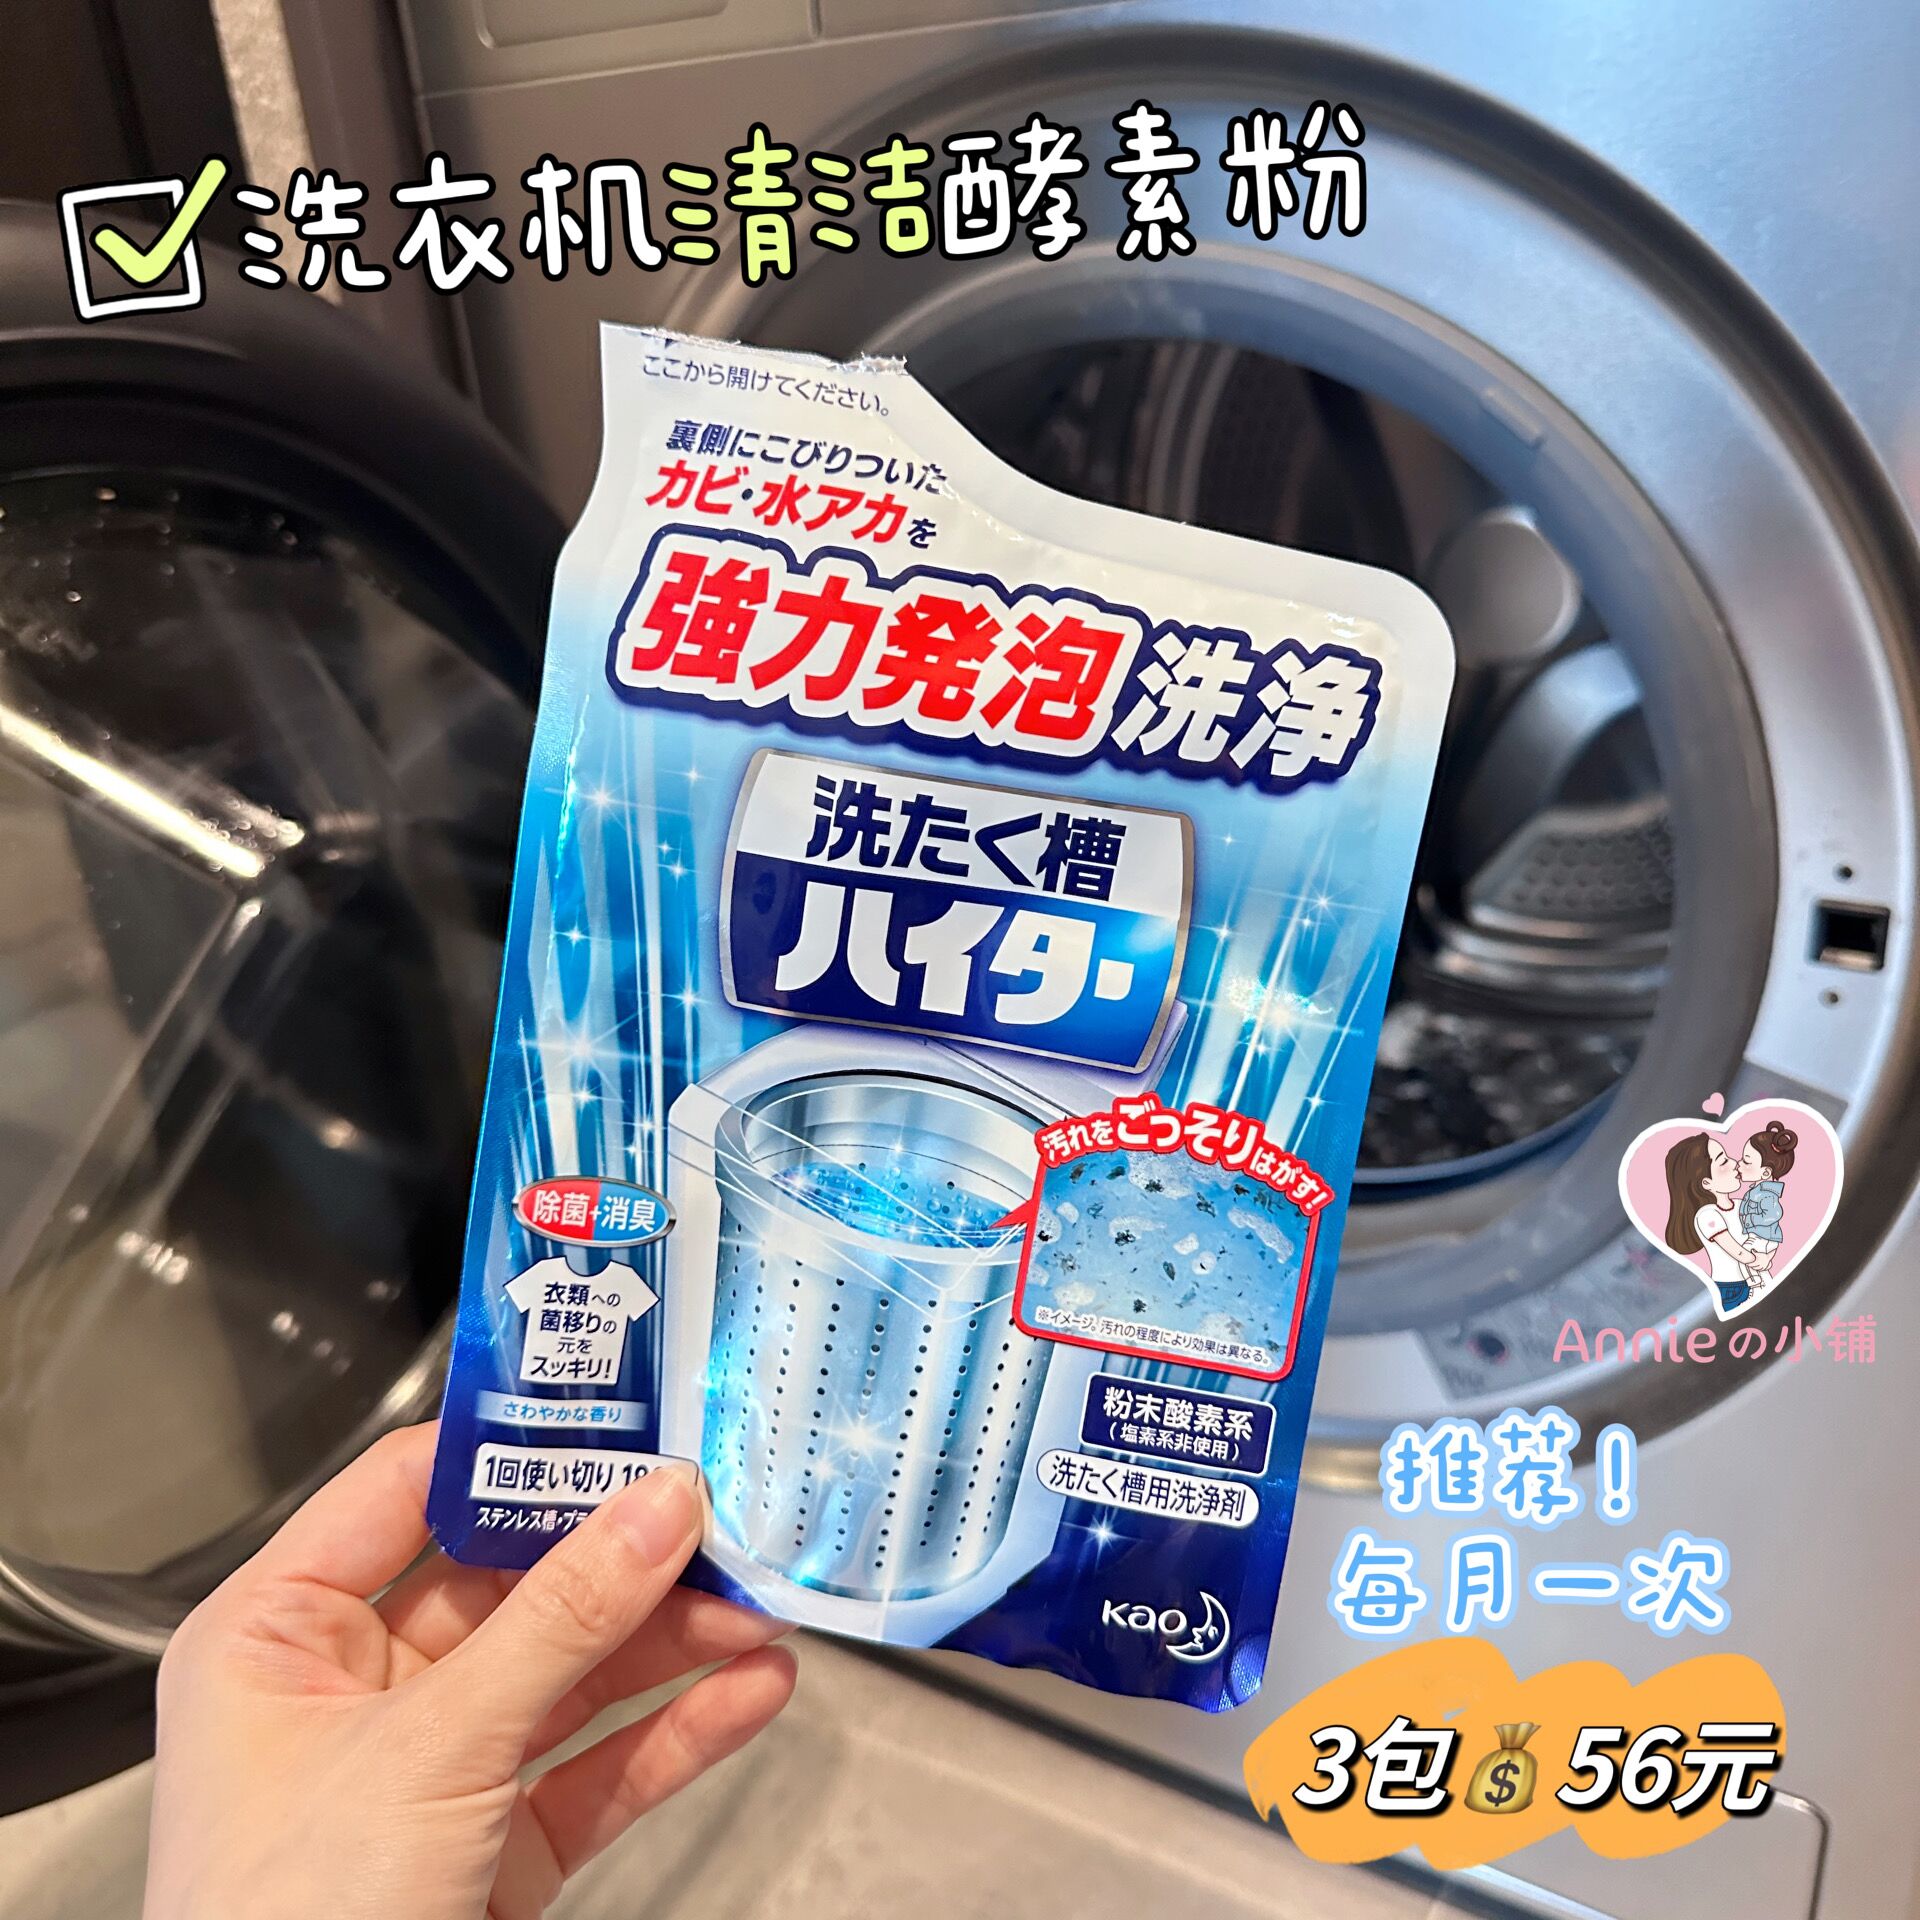 3包56元 日本花王洗衣机槽清洗剂强力除垢消毒除菌家用波轮式粉状